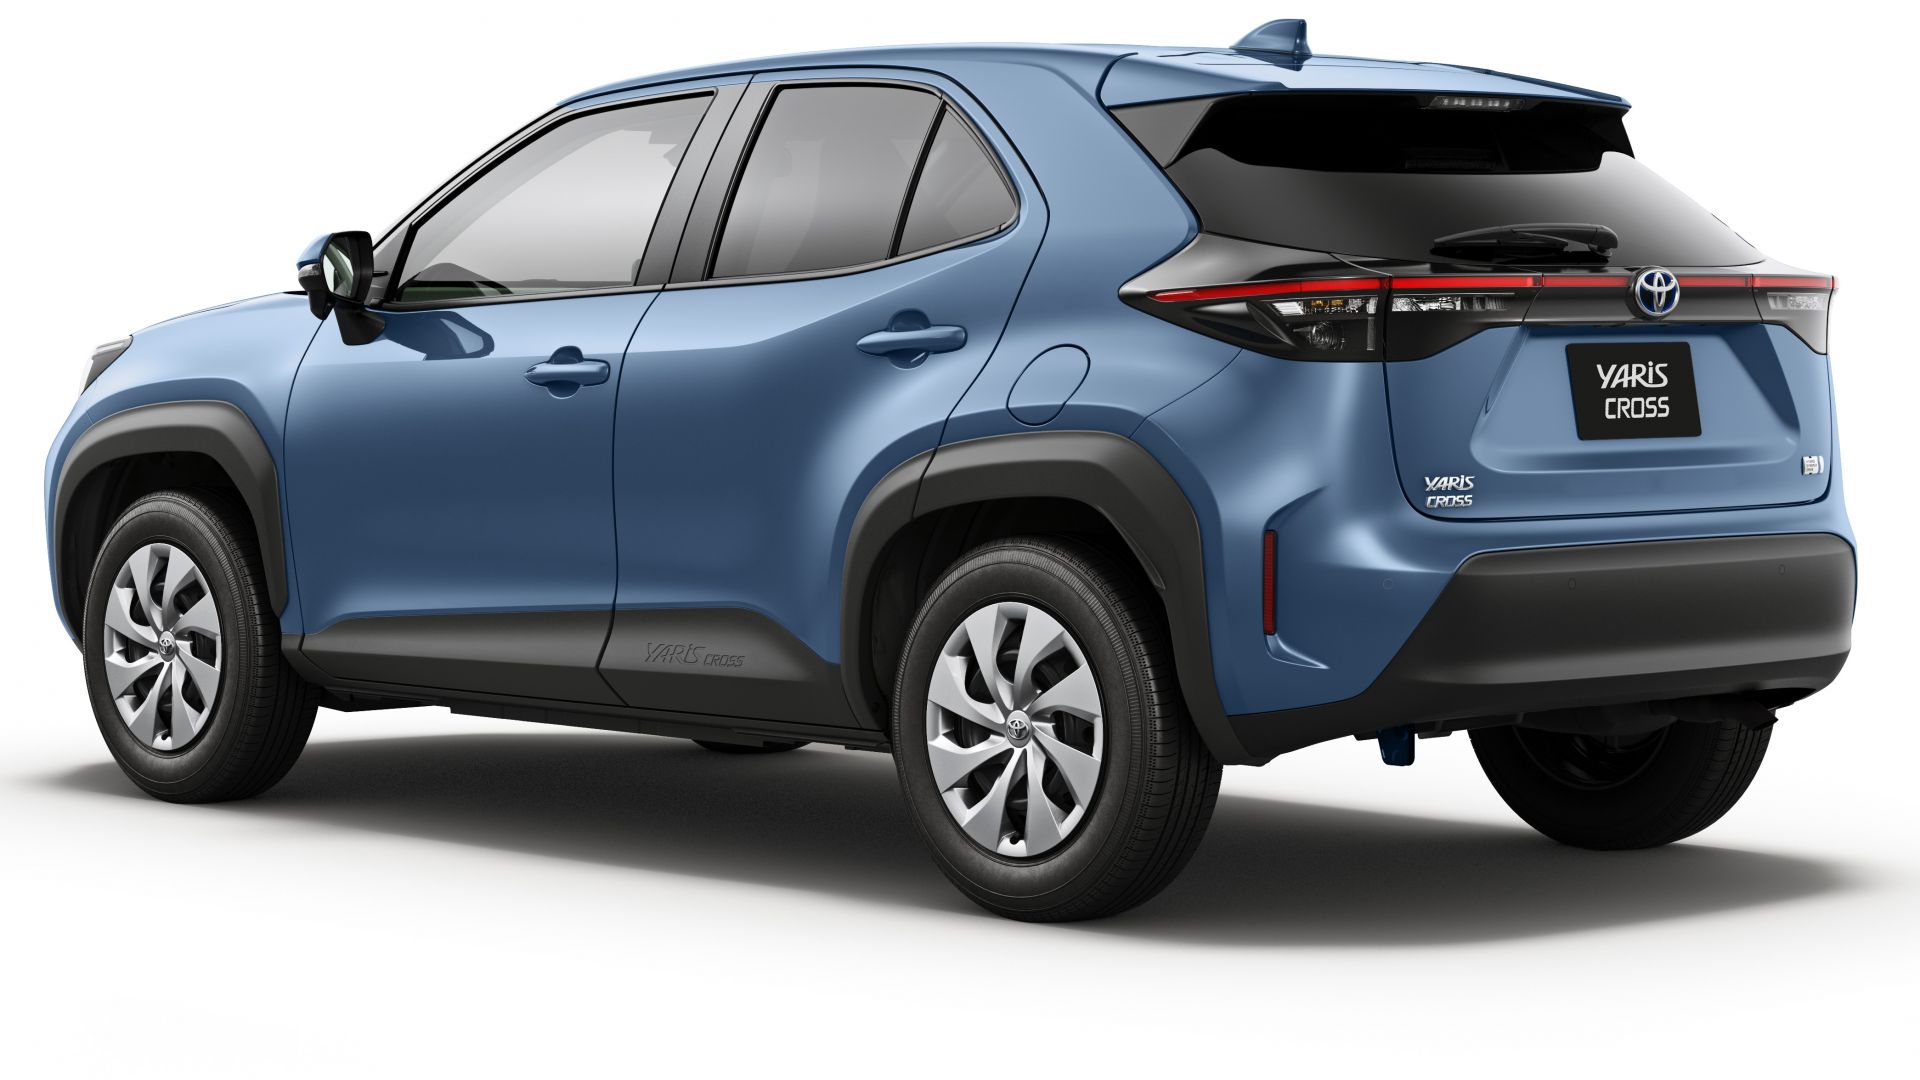 Nuovo SUV Toyota Yaris Cross (2021): quando esce e quanto costa - MotorBox